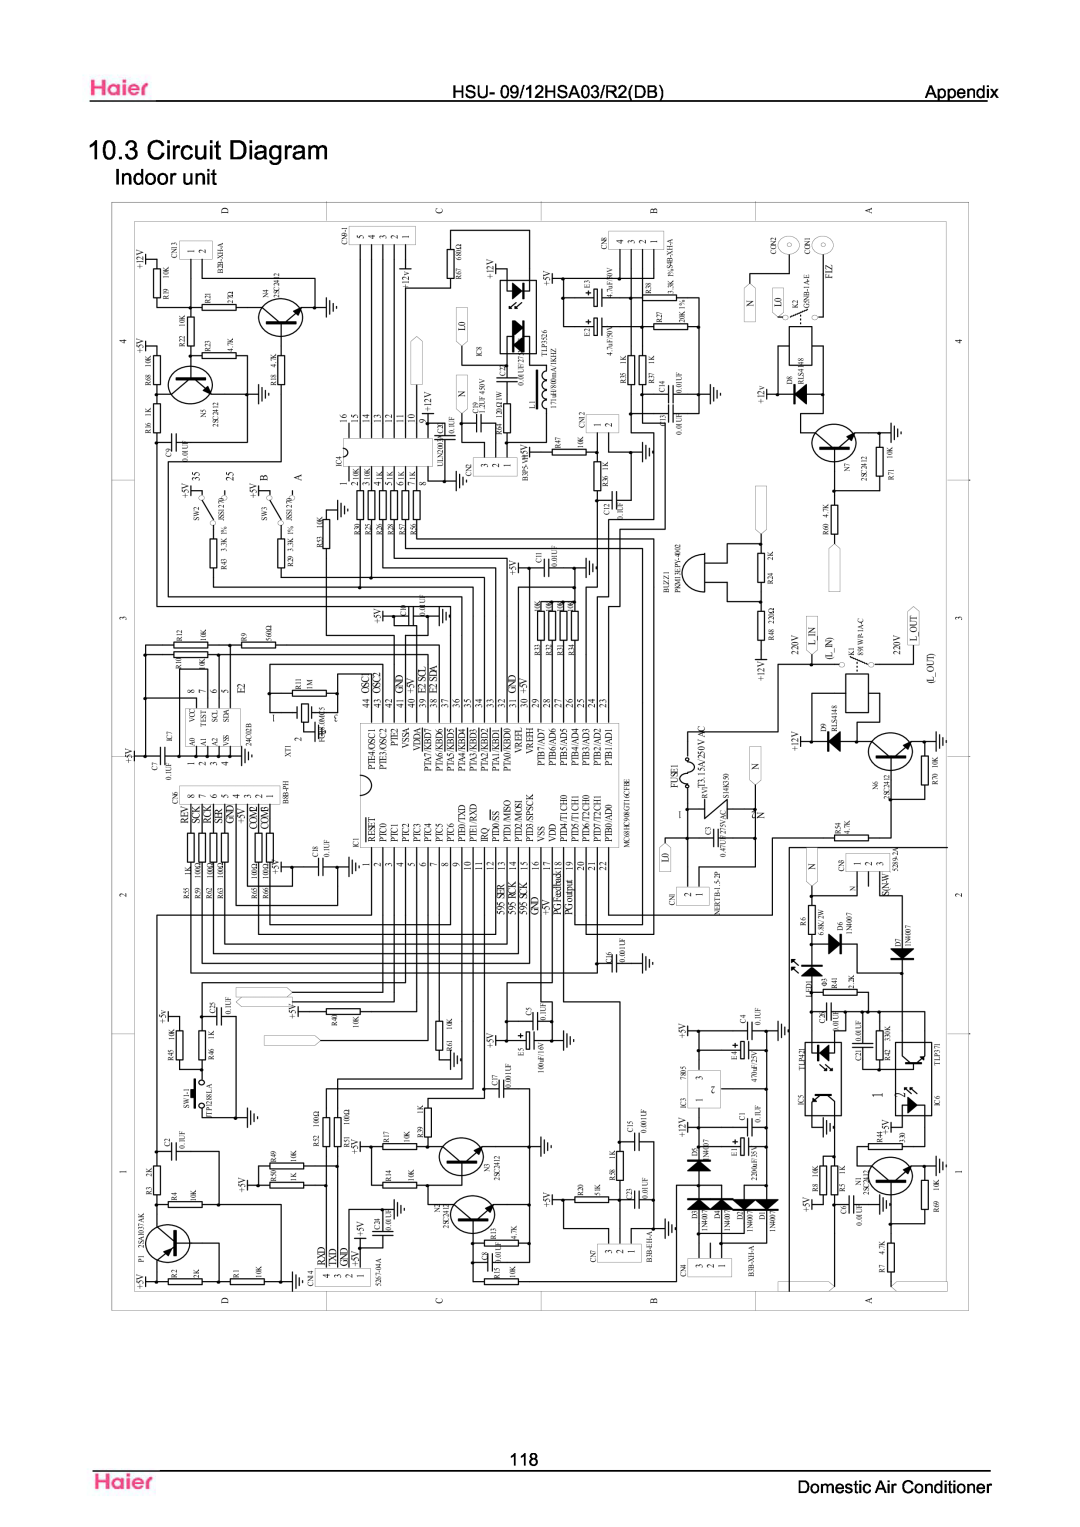 Haier HSU-09HSA03/R2(DB) manual Circuit Diagram Indoor unit, Domestic Air Conditioner, HSU- 09/12HSA03/R2DB Appendix 